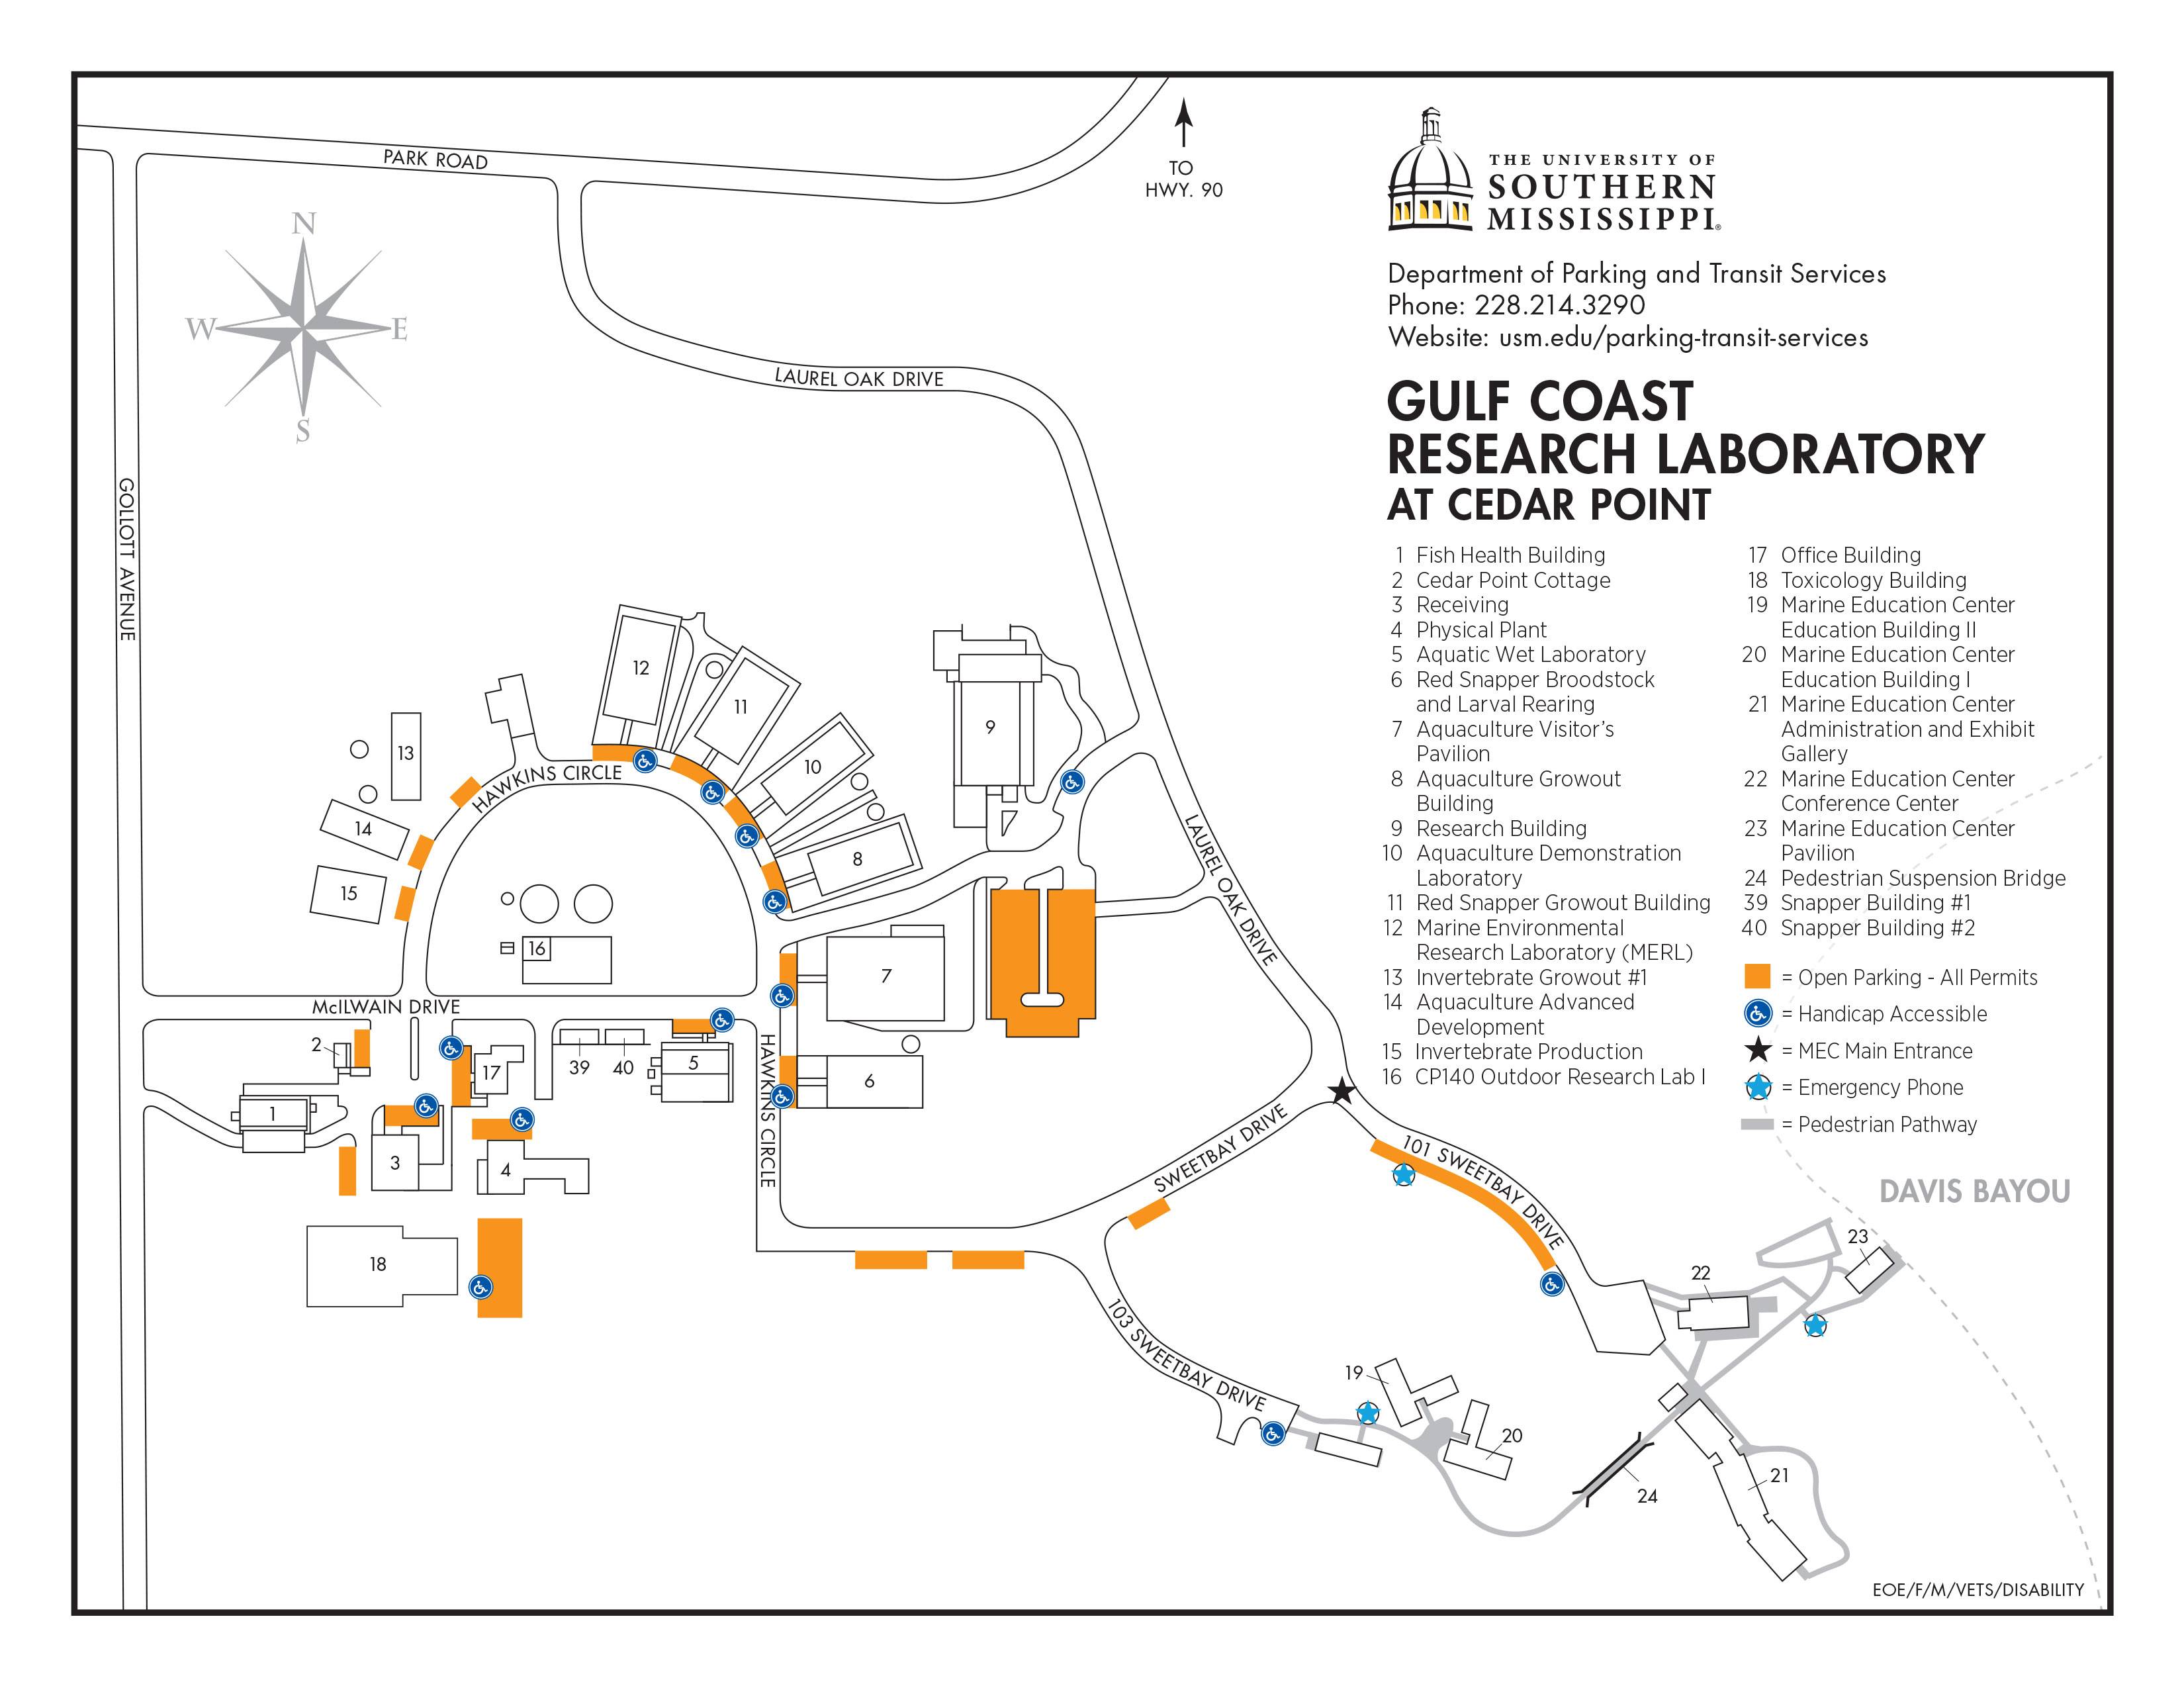 GCRL Campus Maps